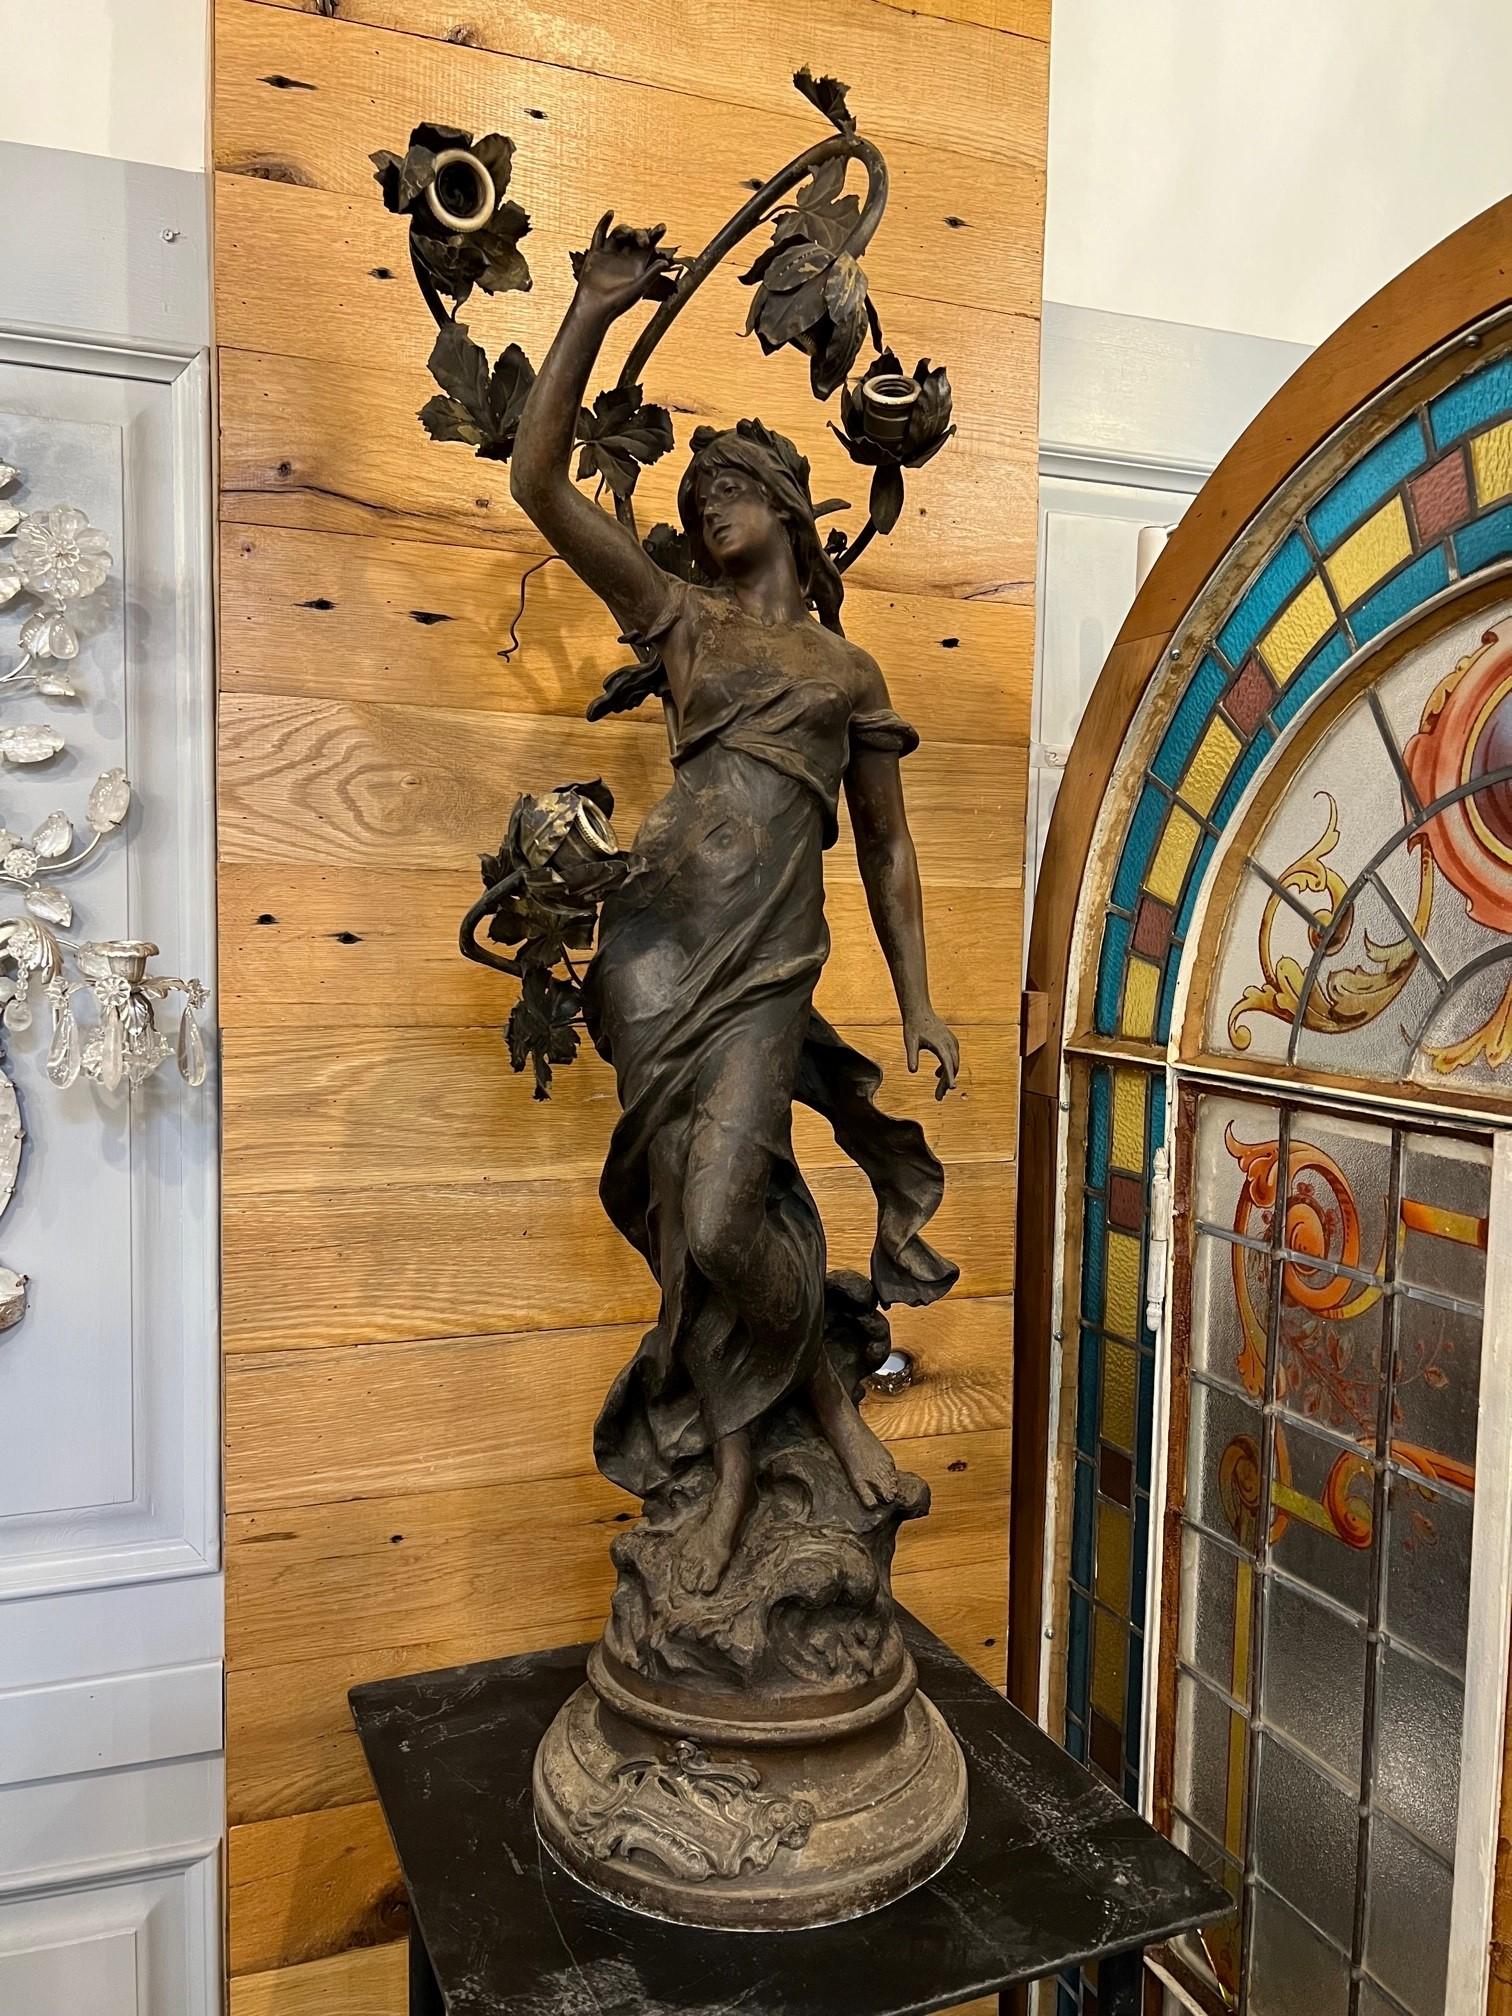 Lampe de poteau Newel Art Nouveau du début du 20e siècle, également connue sous le nom de lampe de pilier. Ce luminaire représente une belle femme au bras levé et quatre lumières. Les lampes à poteau Newel étaient utilisées pour éclairer les maisons